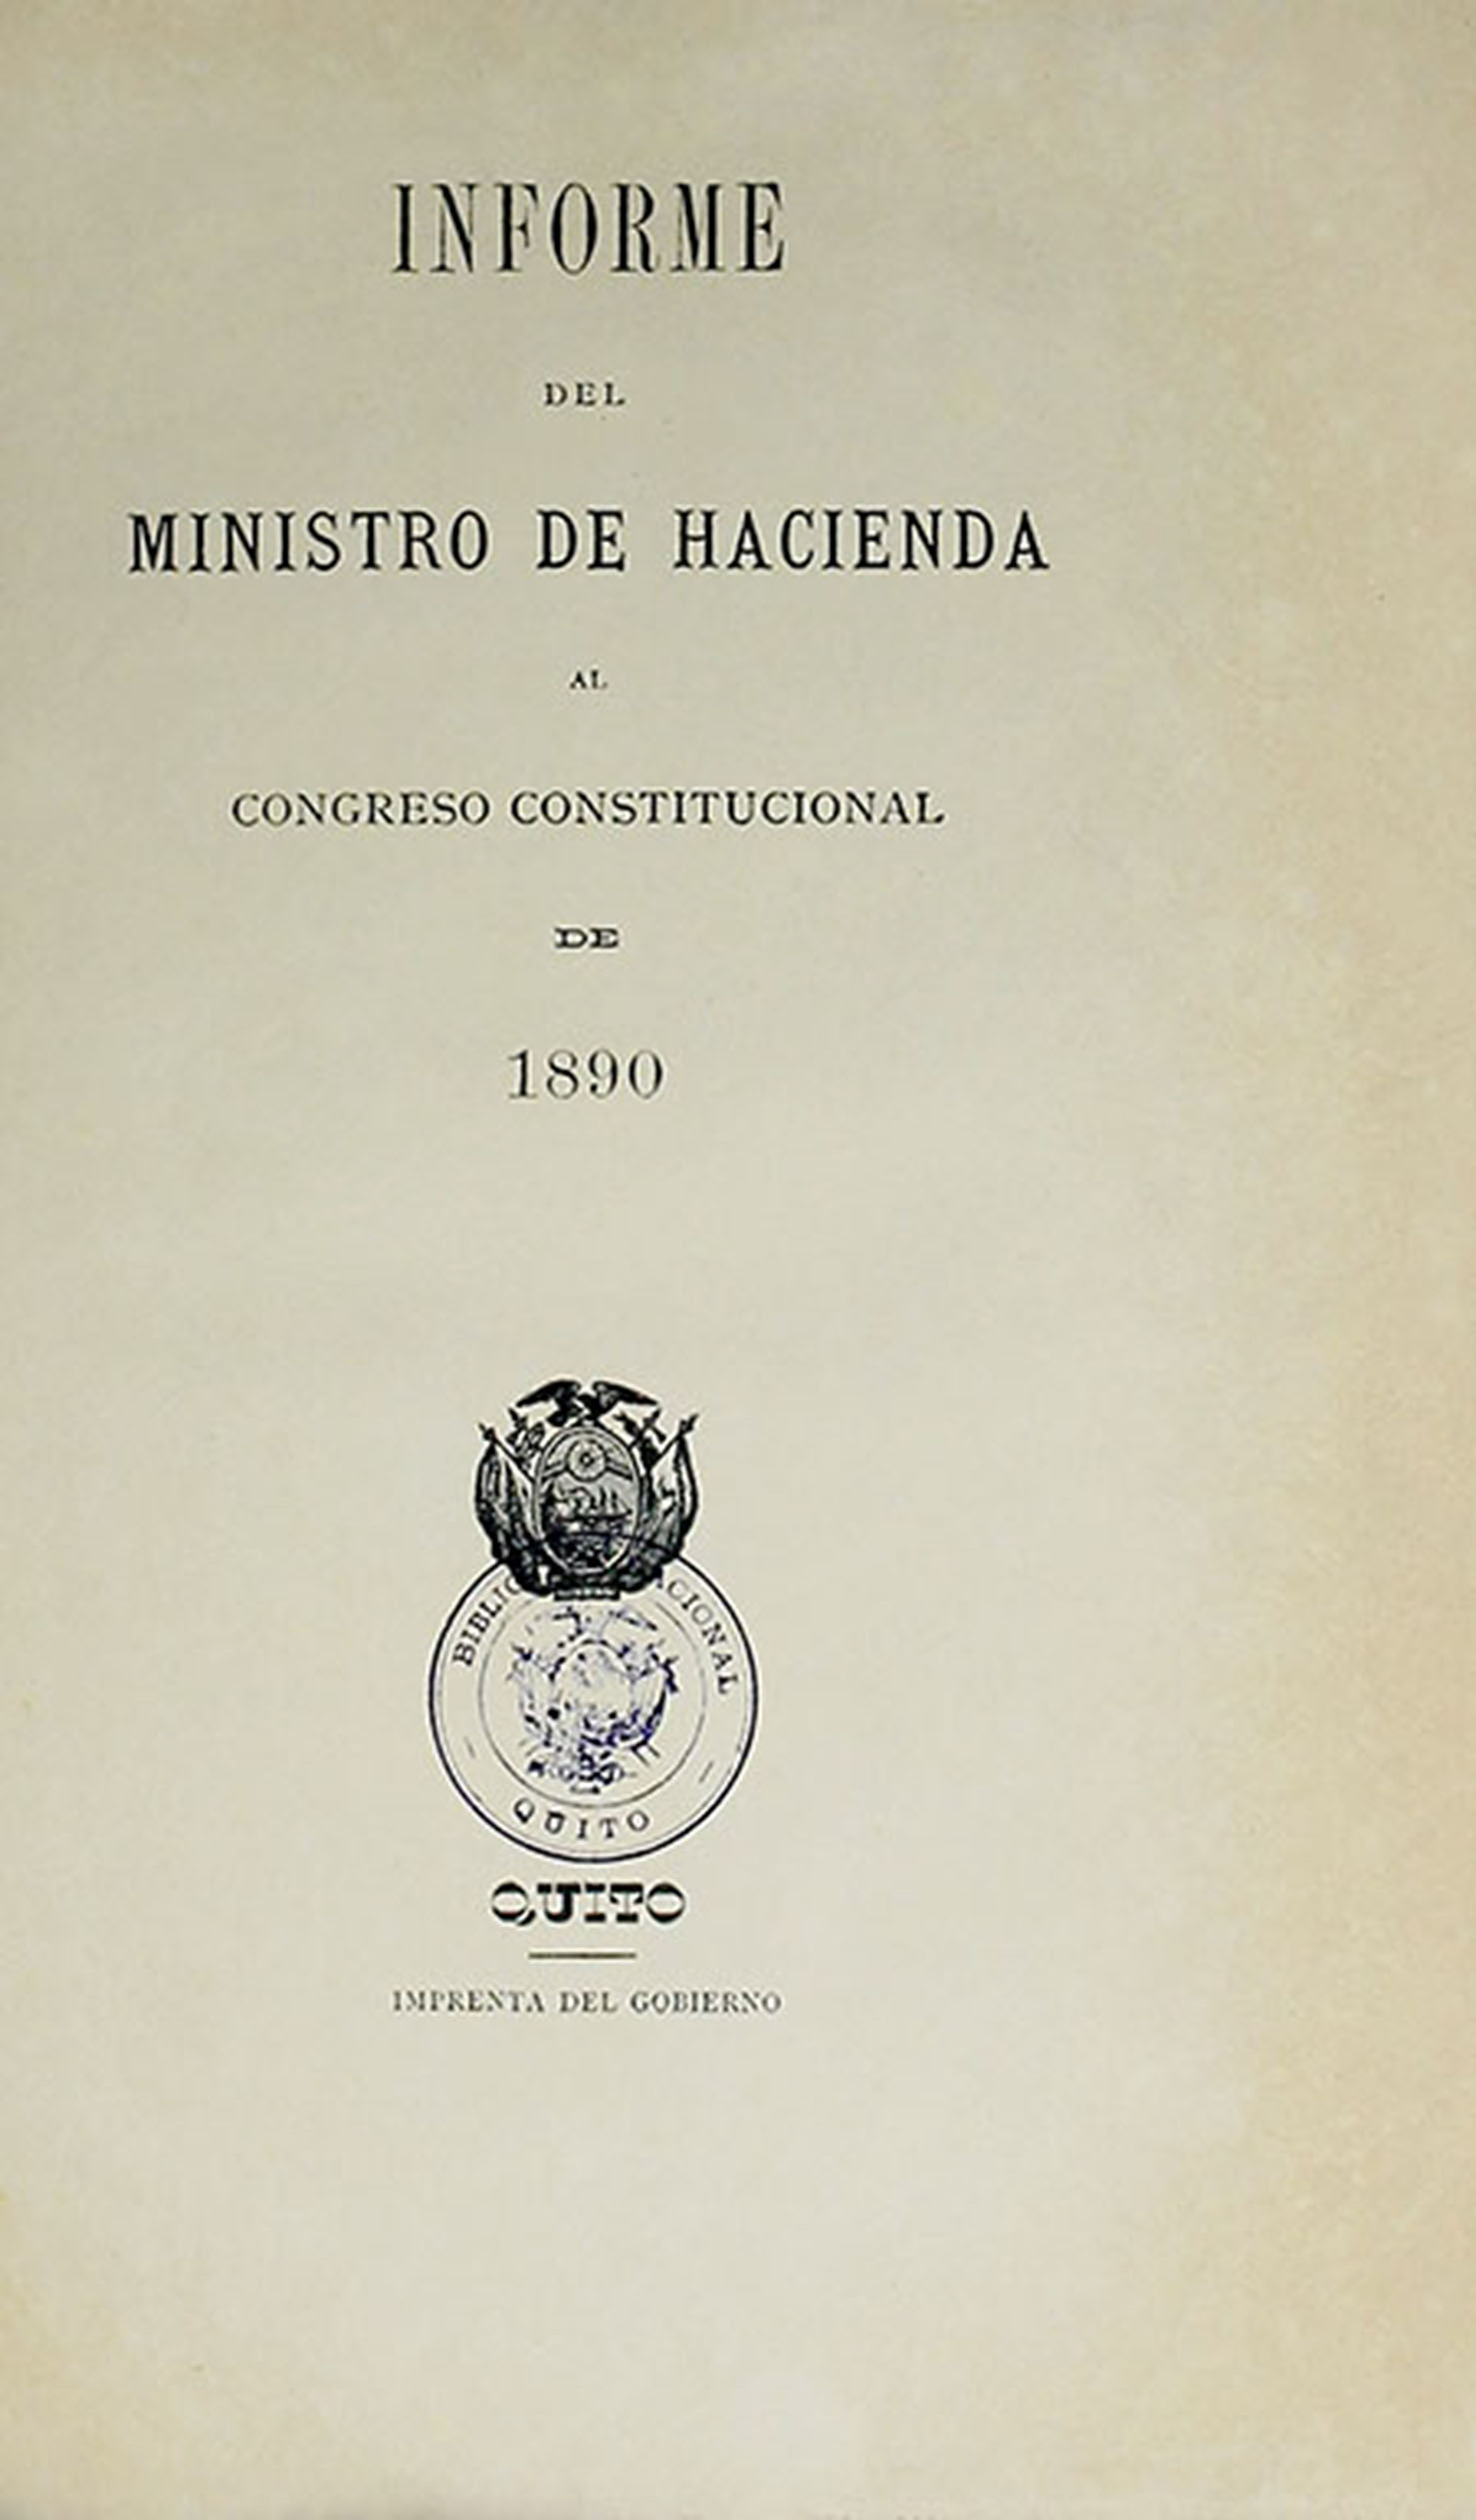 Informe del Ministro de Hacienda al Congreso Constitucional de 1890.